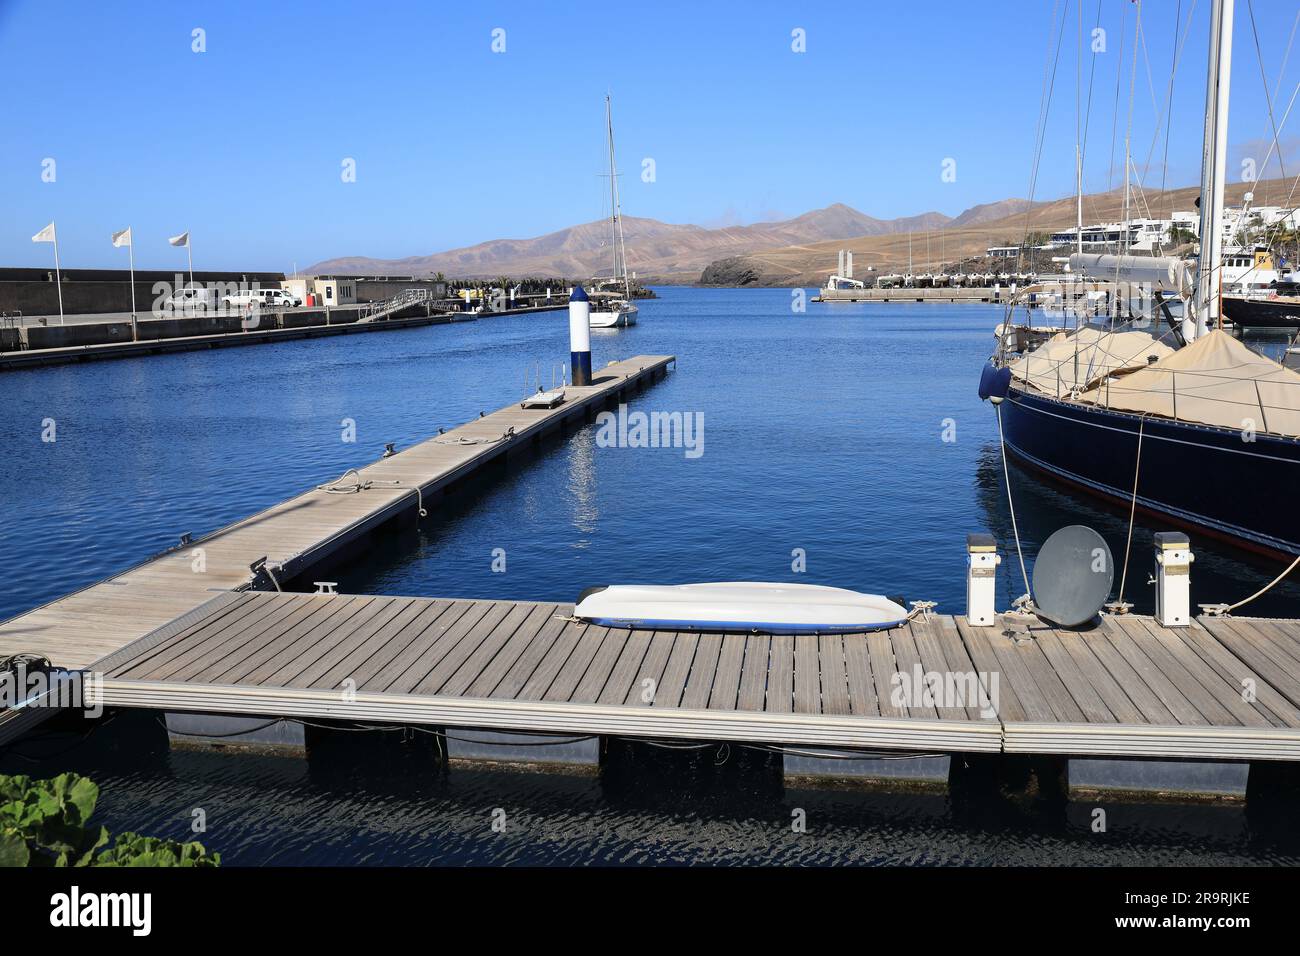 Puerto Calero, Lanzarote, Canary Islands, Europe Stock Photo